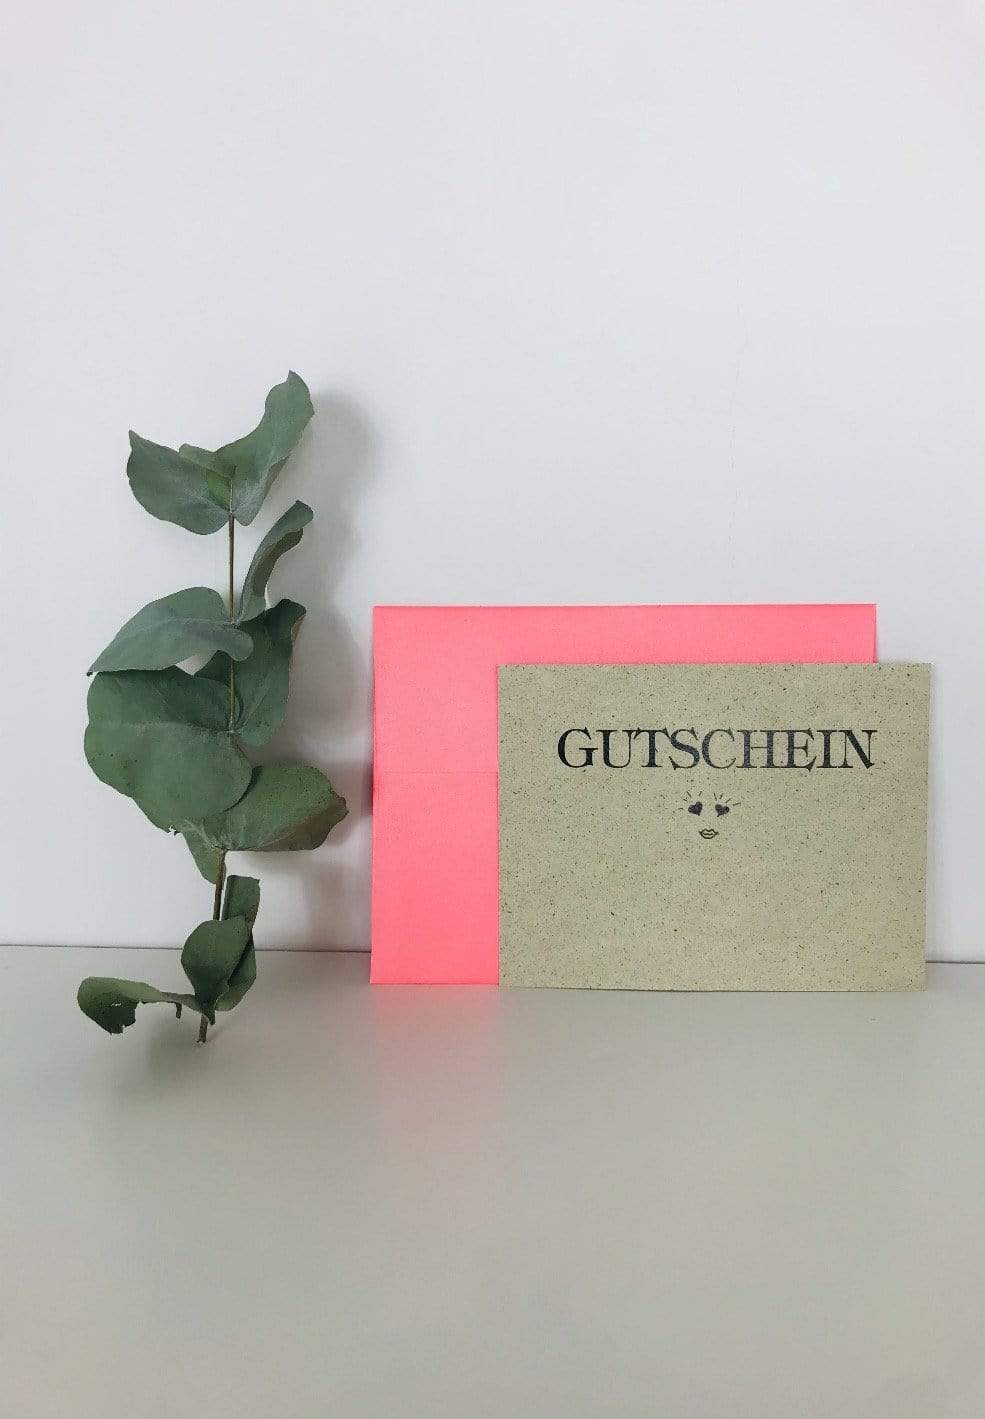 iki M. Geschenkgutschein Gutschein aus Graspapier - Made in Germany Faire Mode Women muenchen